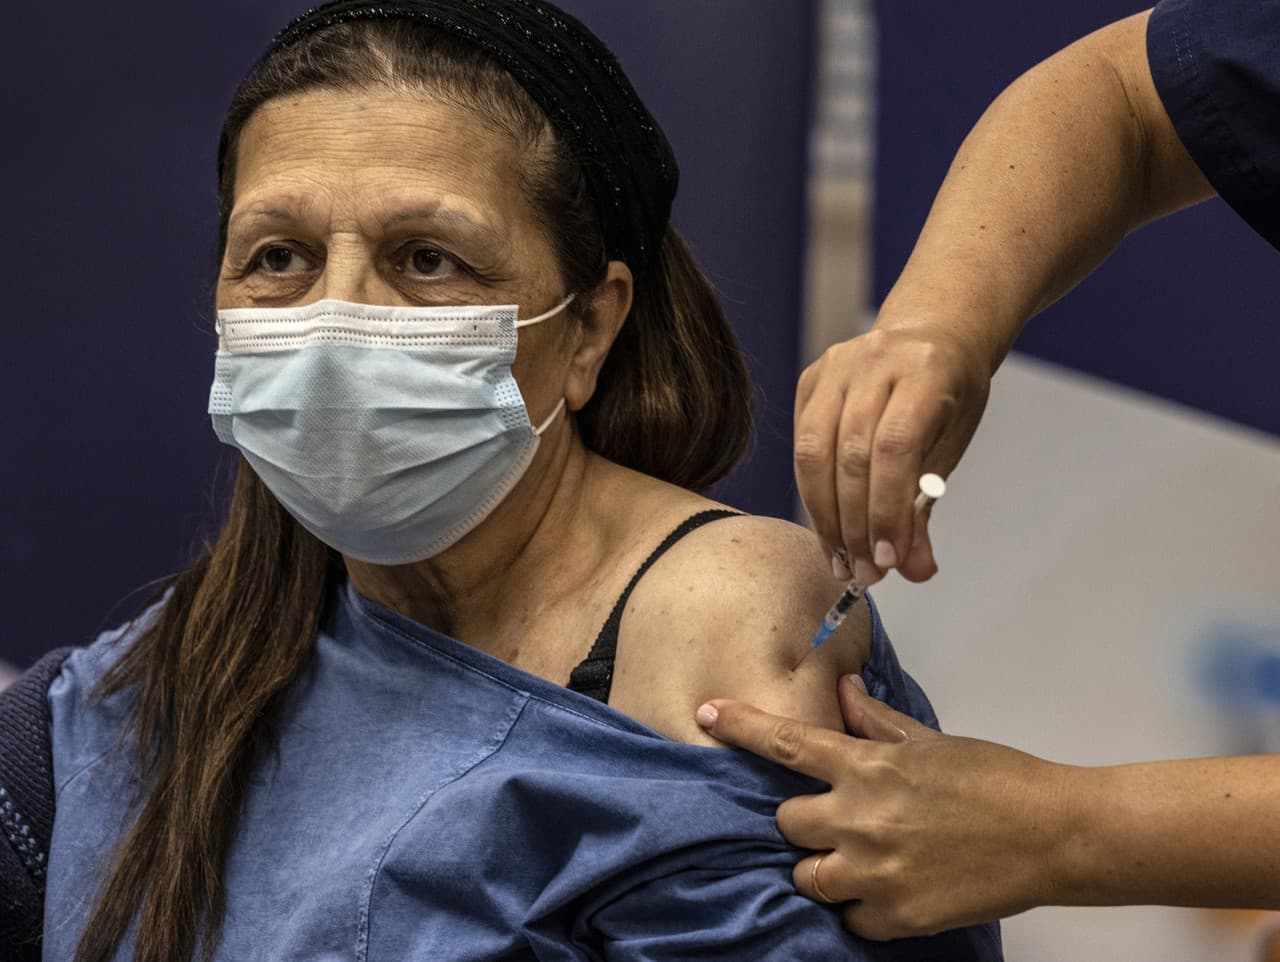 Žena dostáva štvrtú dávku očkovacej látky Pfizer/BoNTech